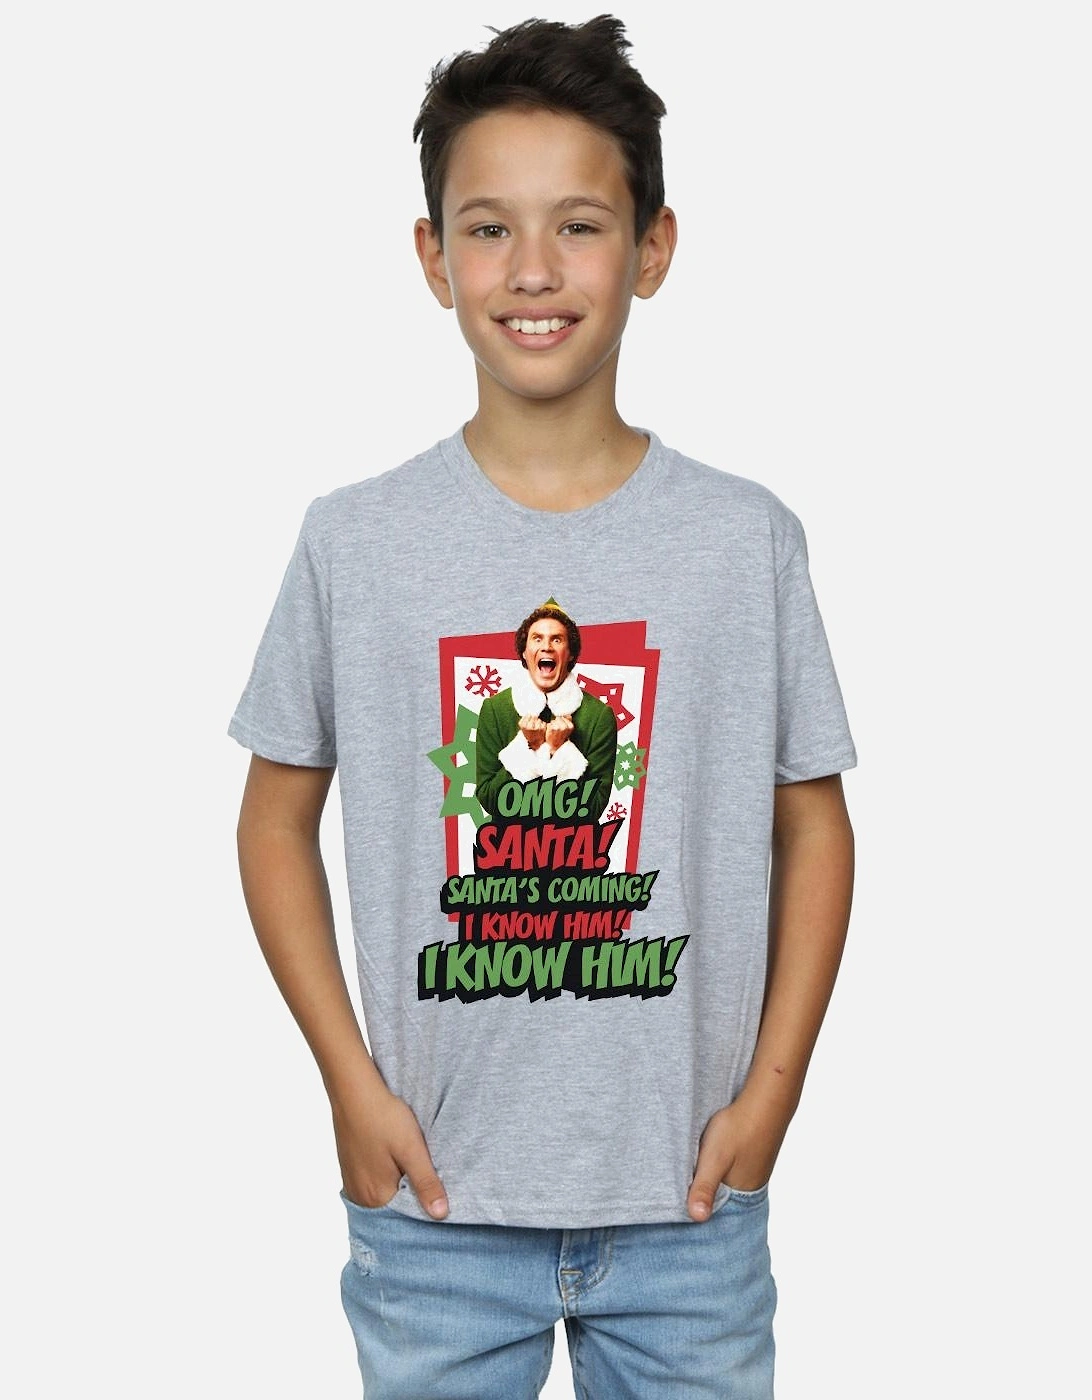 Boys OMG Santa T-Shirt